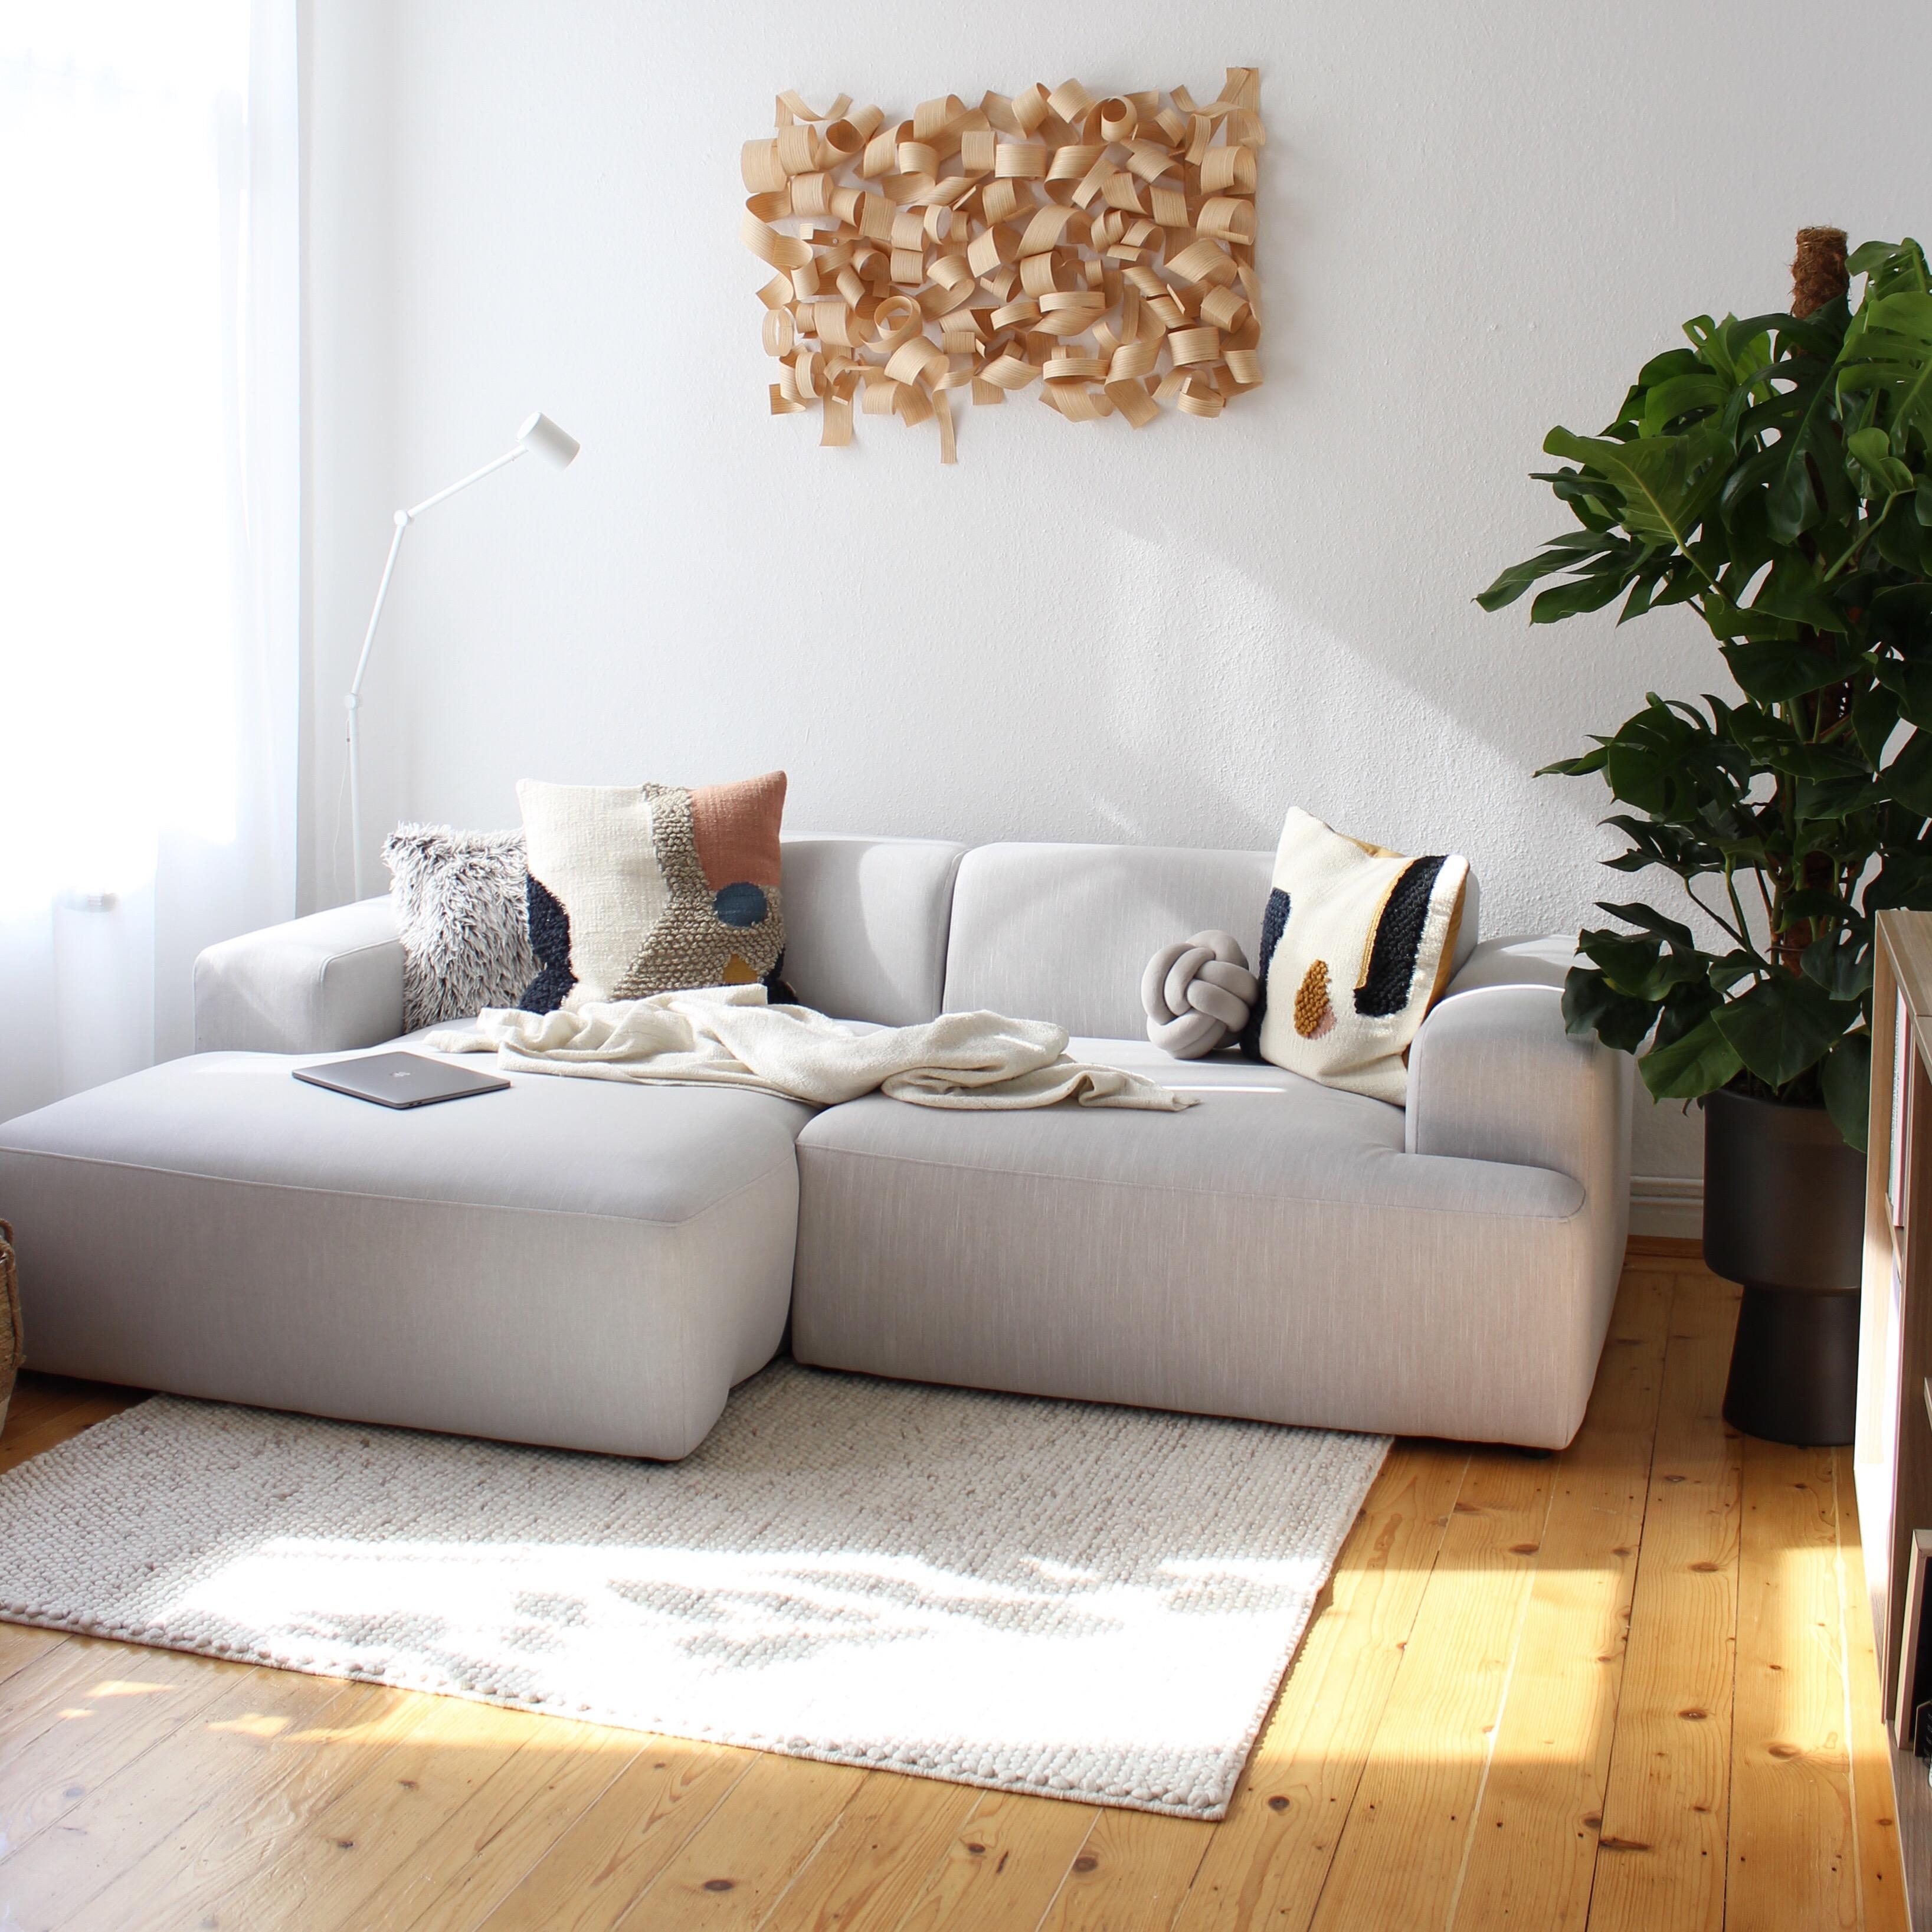 Ich liebe dieses Licht in meinem Wohnzimmer! #light #sunshine #sonnenlicht #wohnzimmer #livingroom #couch #altbauliebe 